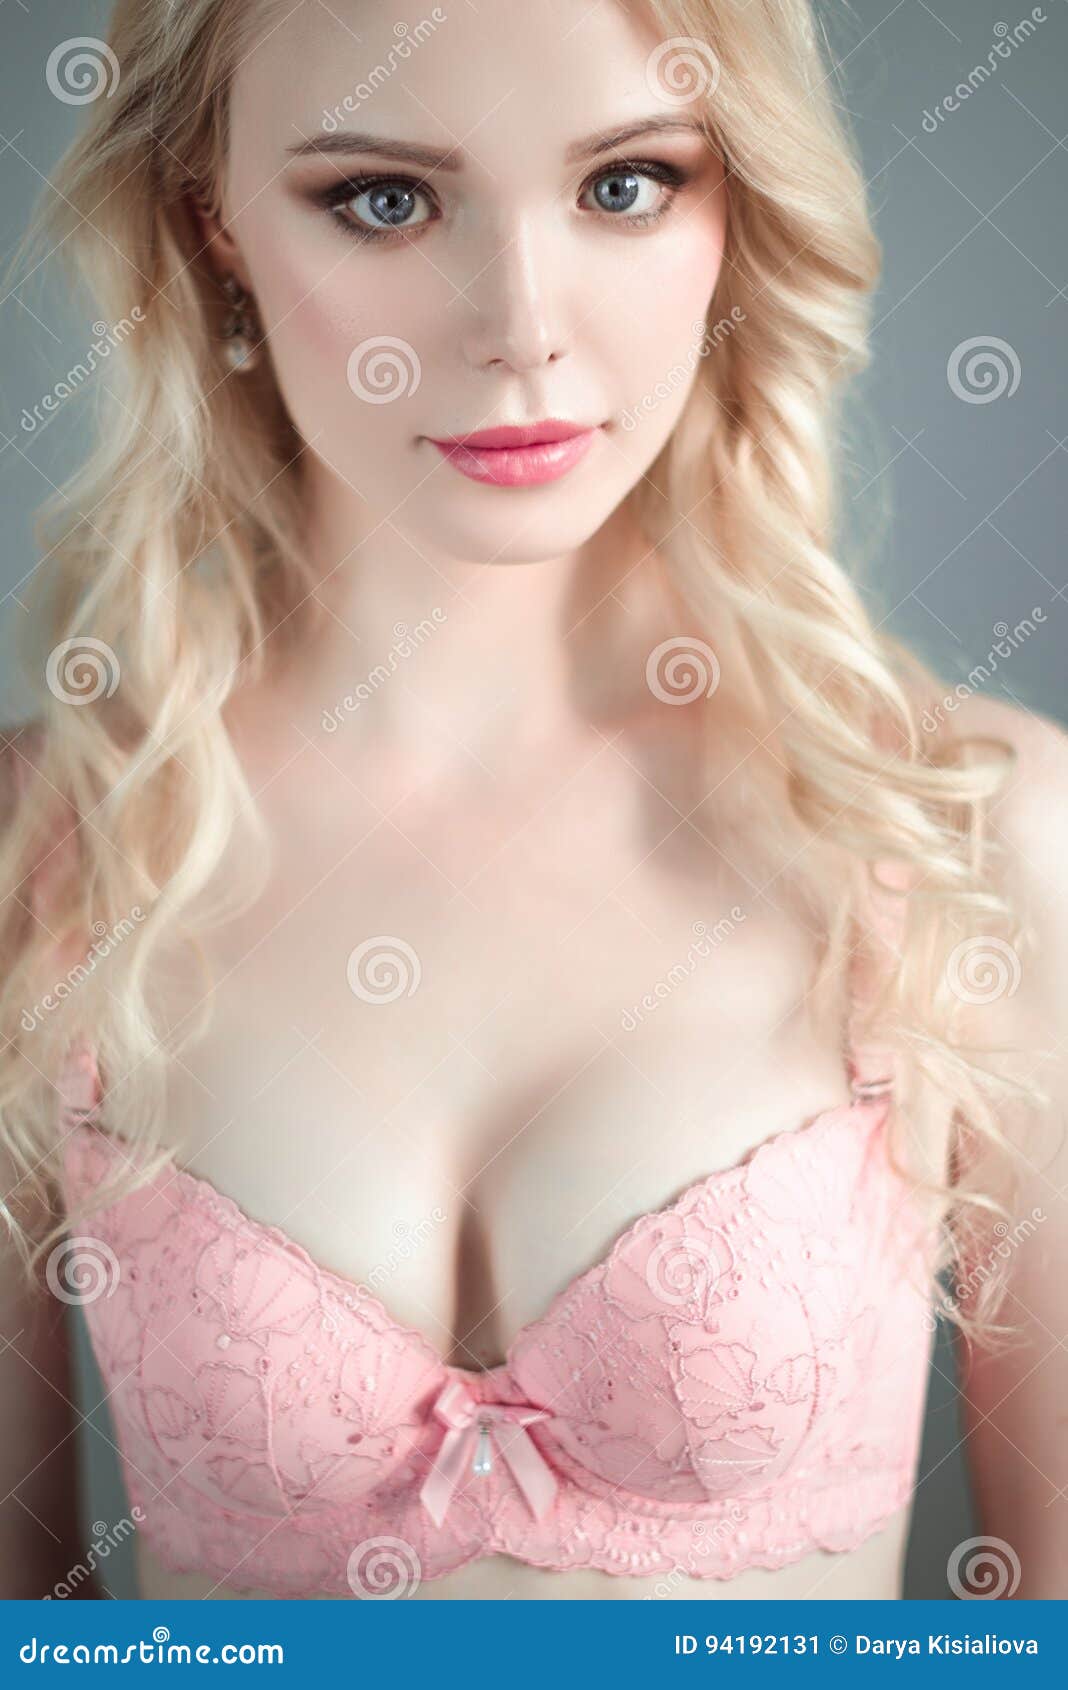 Blonde girl in bra